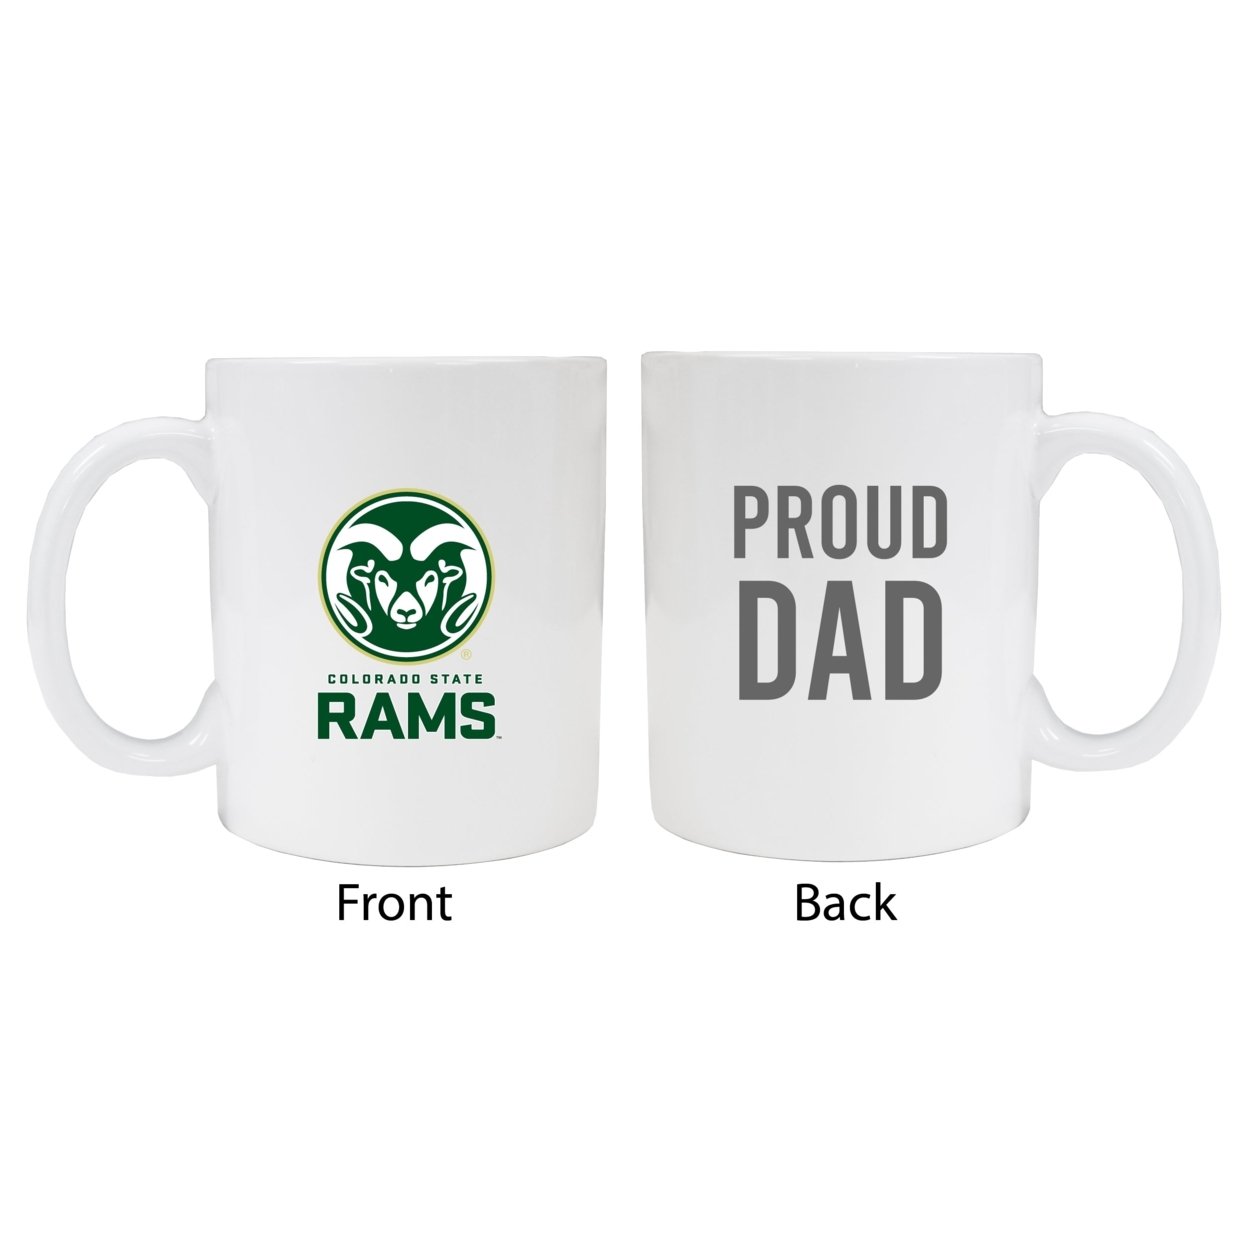 Colorado State Rams Proud Dad Ceramic Coffee Mug - White (2 Pack)